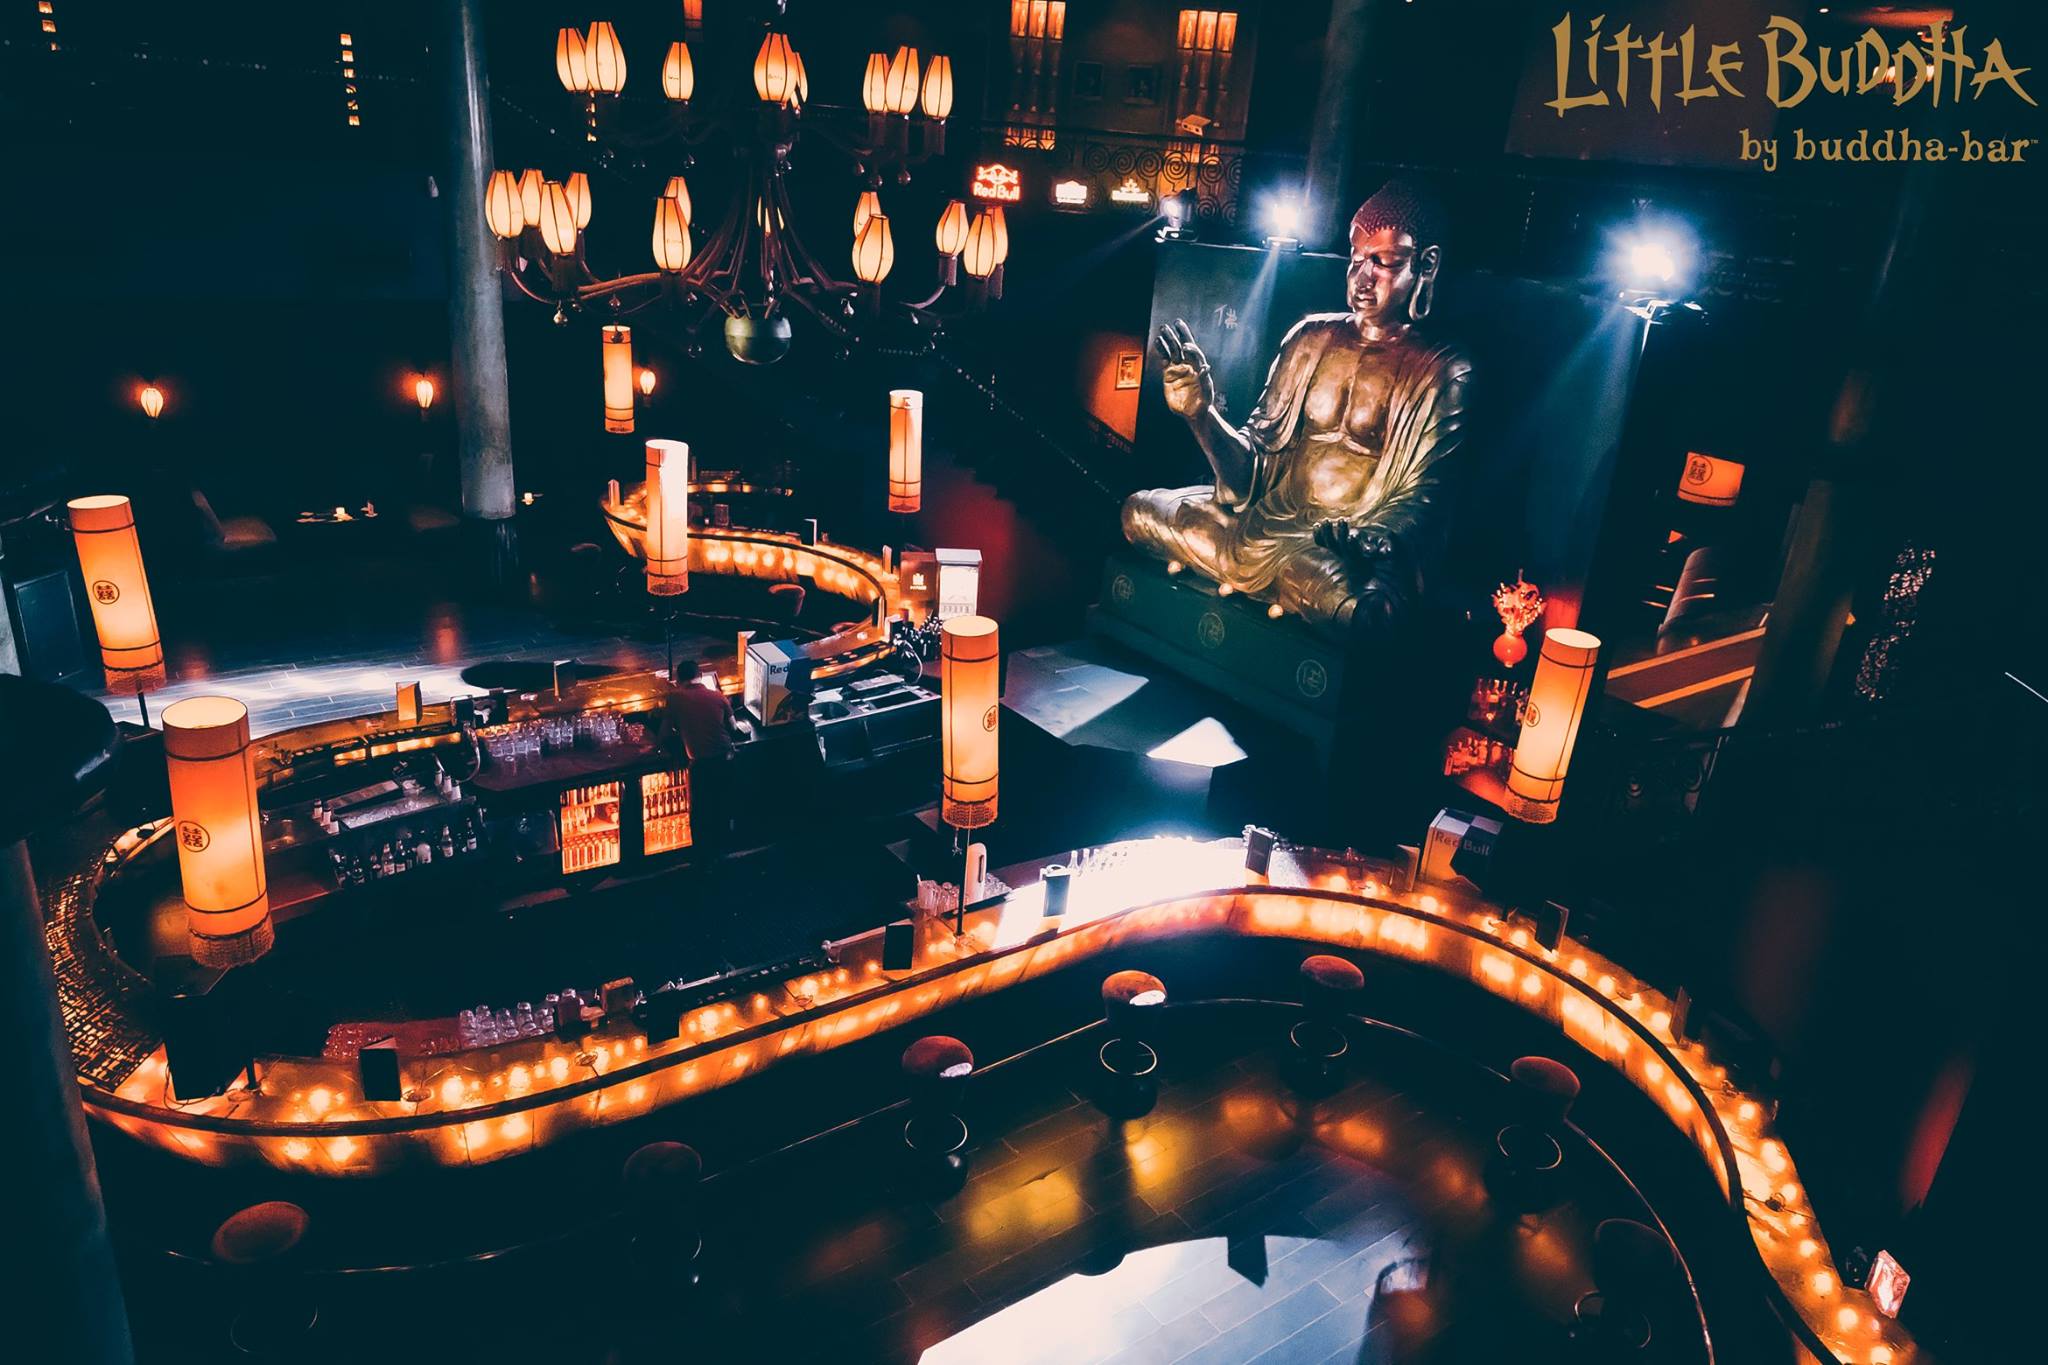 Little Buddha - Buddha-Bar